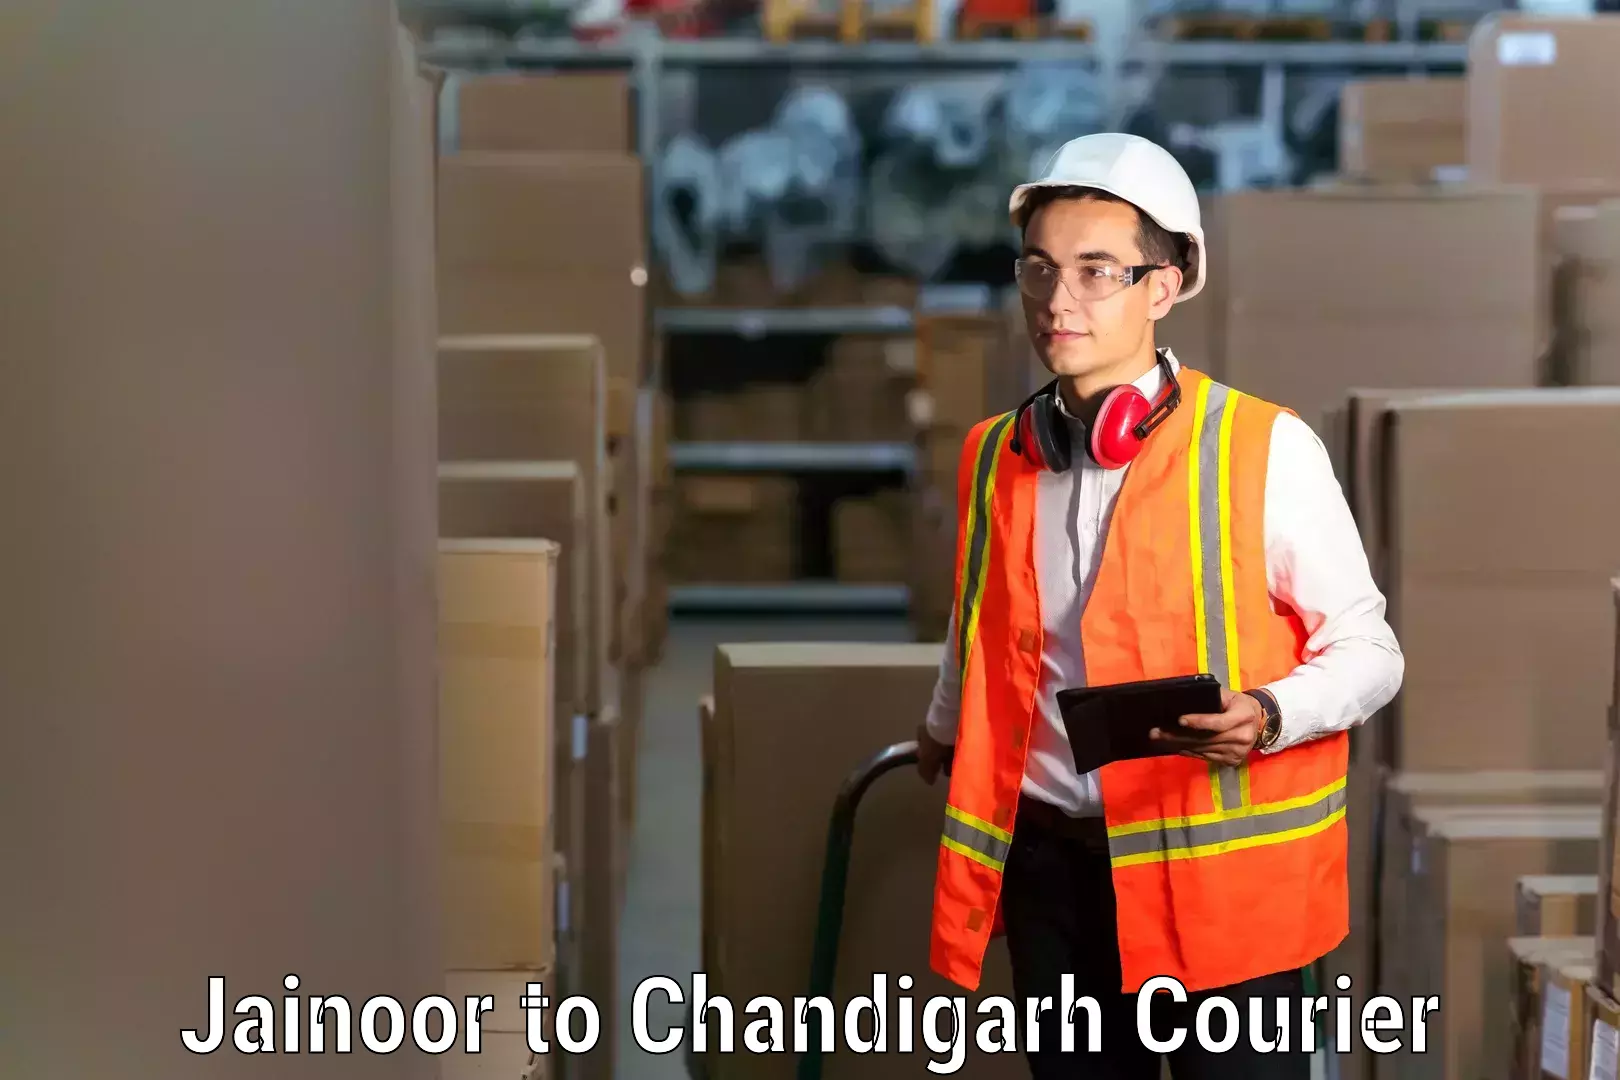 Personalized moving service Jainoor to Chandigarh